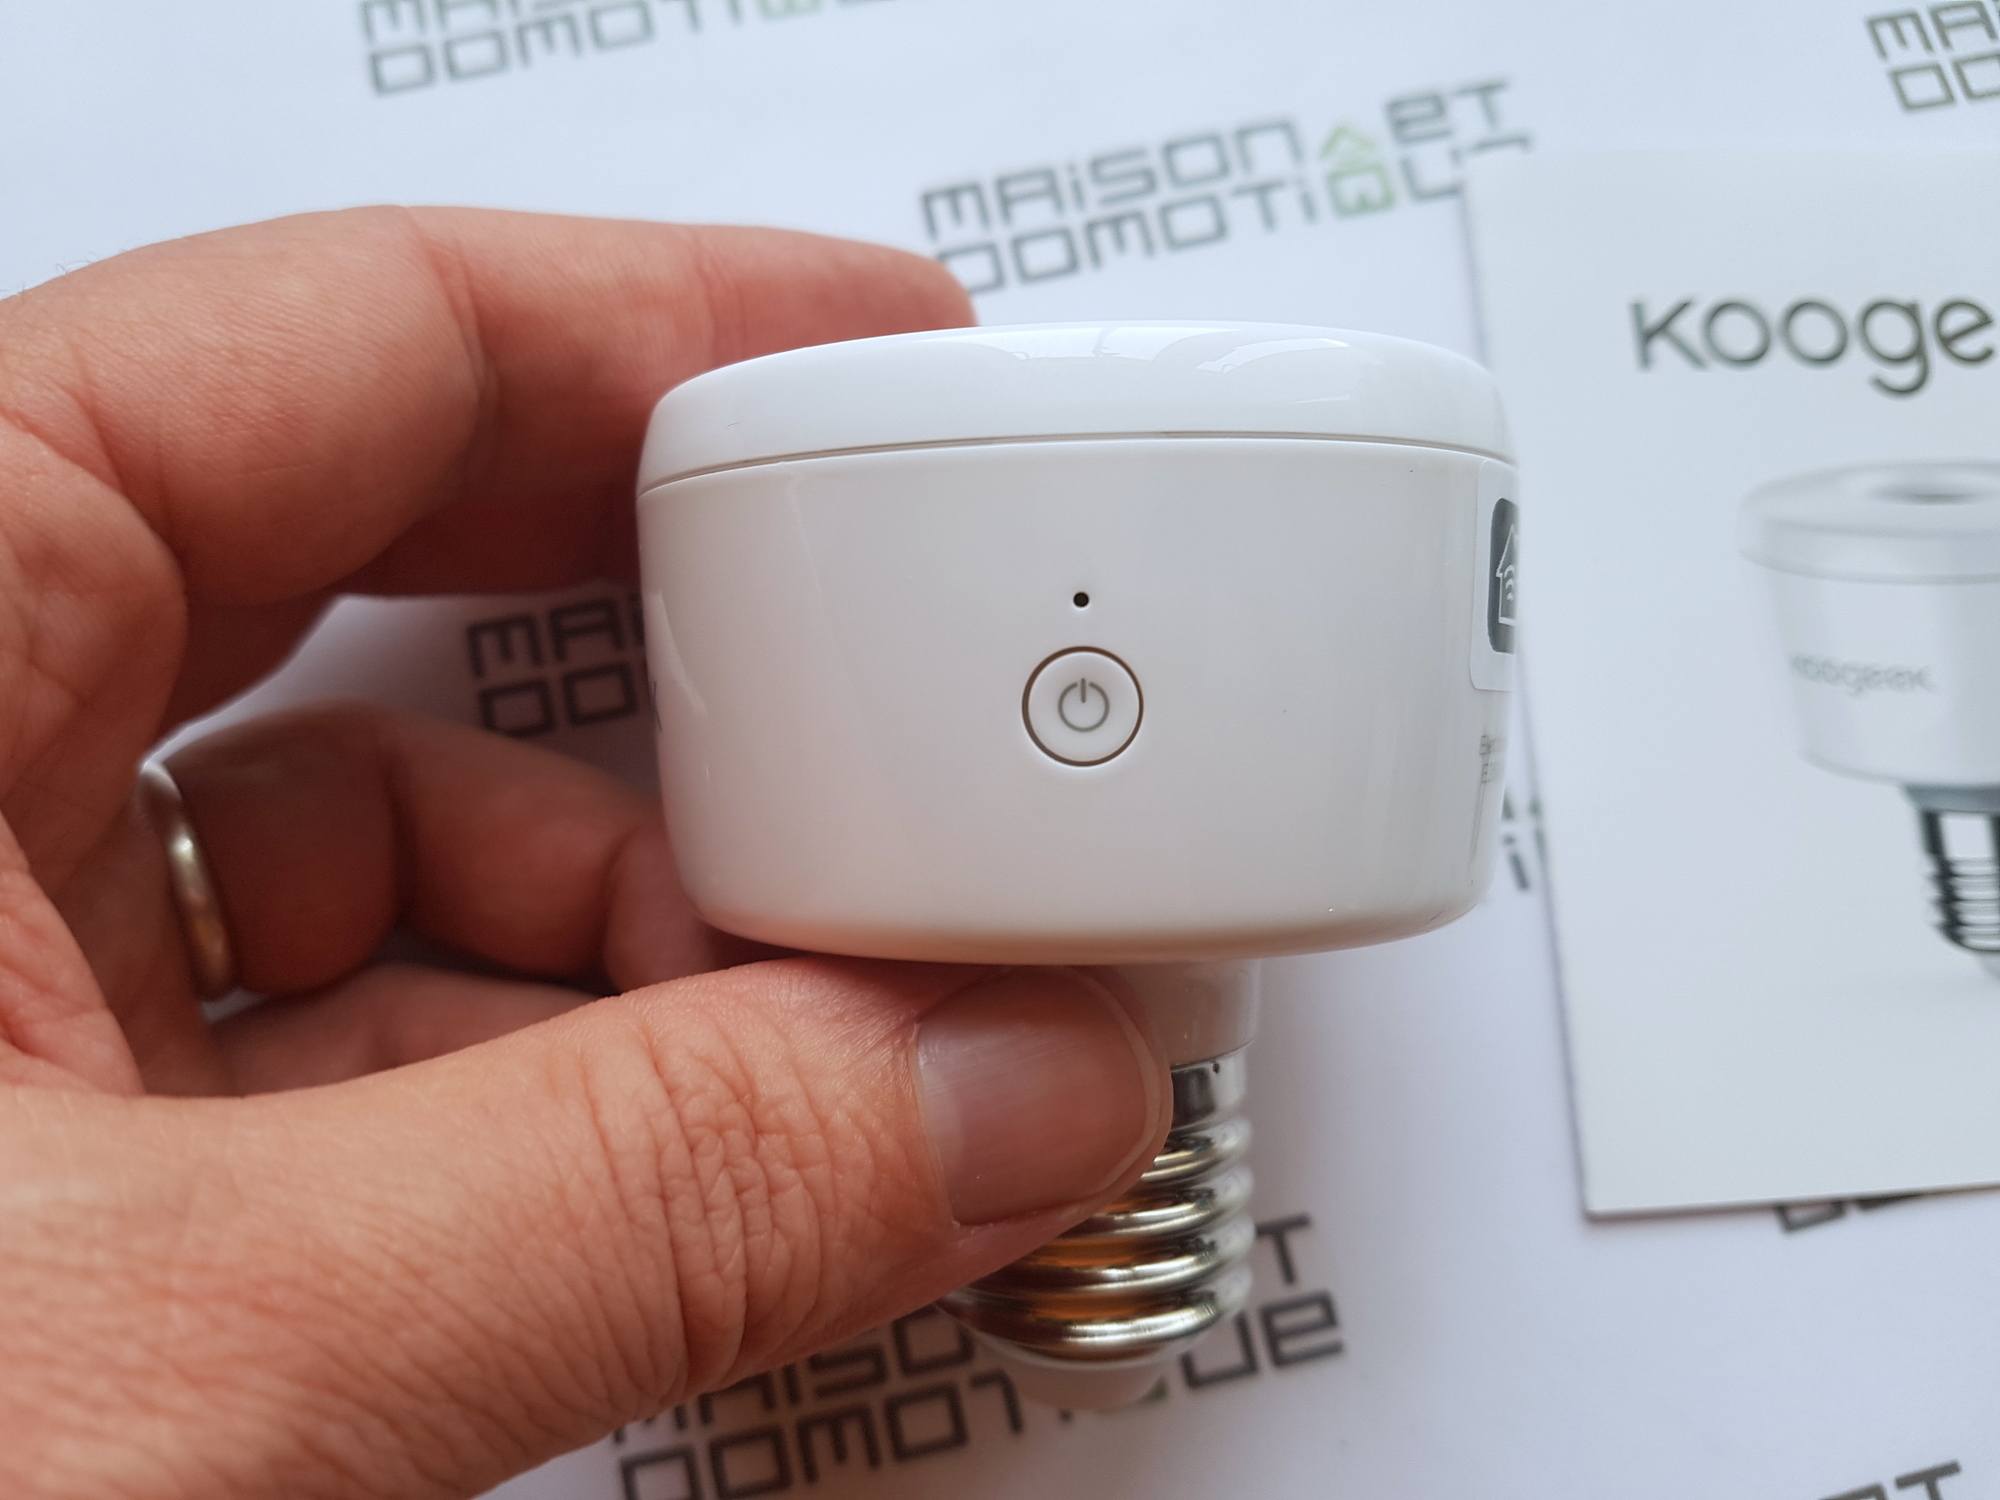 Koogeek Smart socket: pilotez n'importe quelle ampoule avec Siri et Homekit  Apple - Maison et Domotique